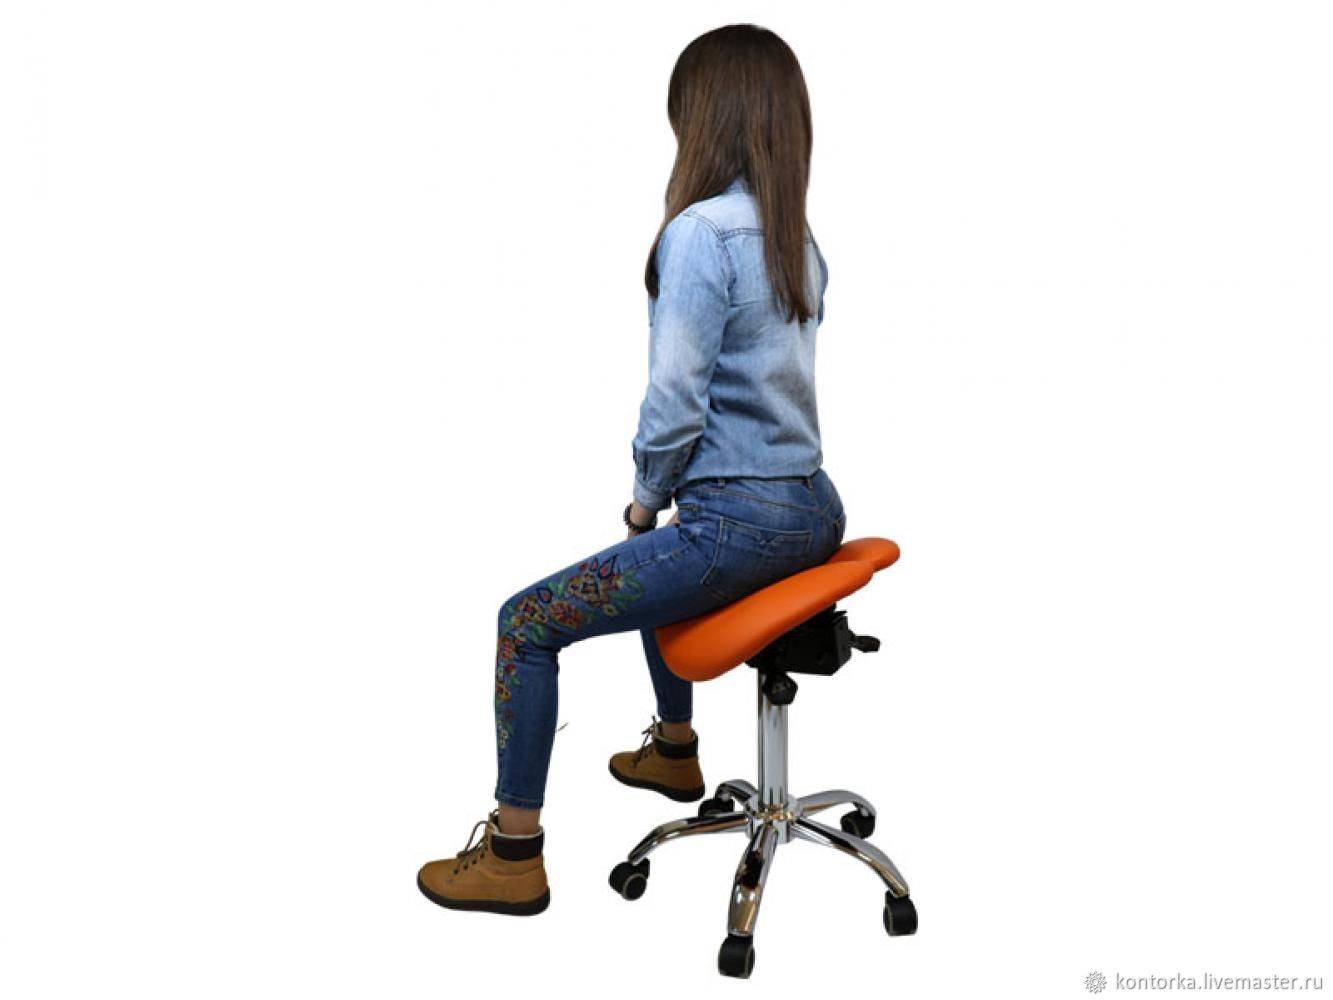 Что такое стул-седло, чем он полезен и каким бывает?